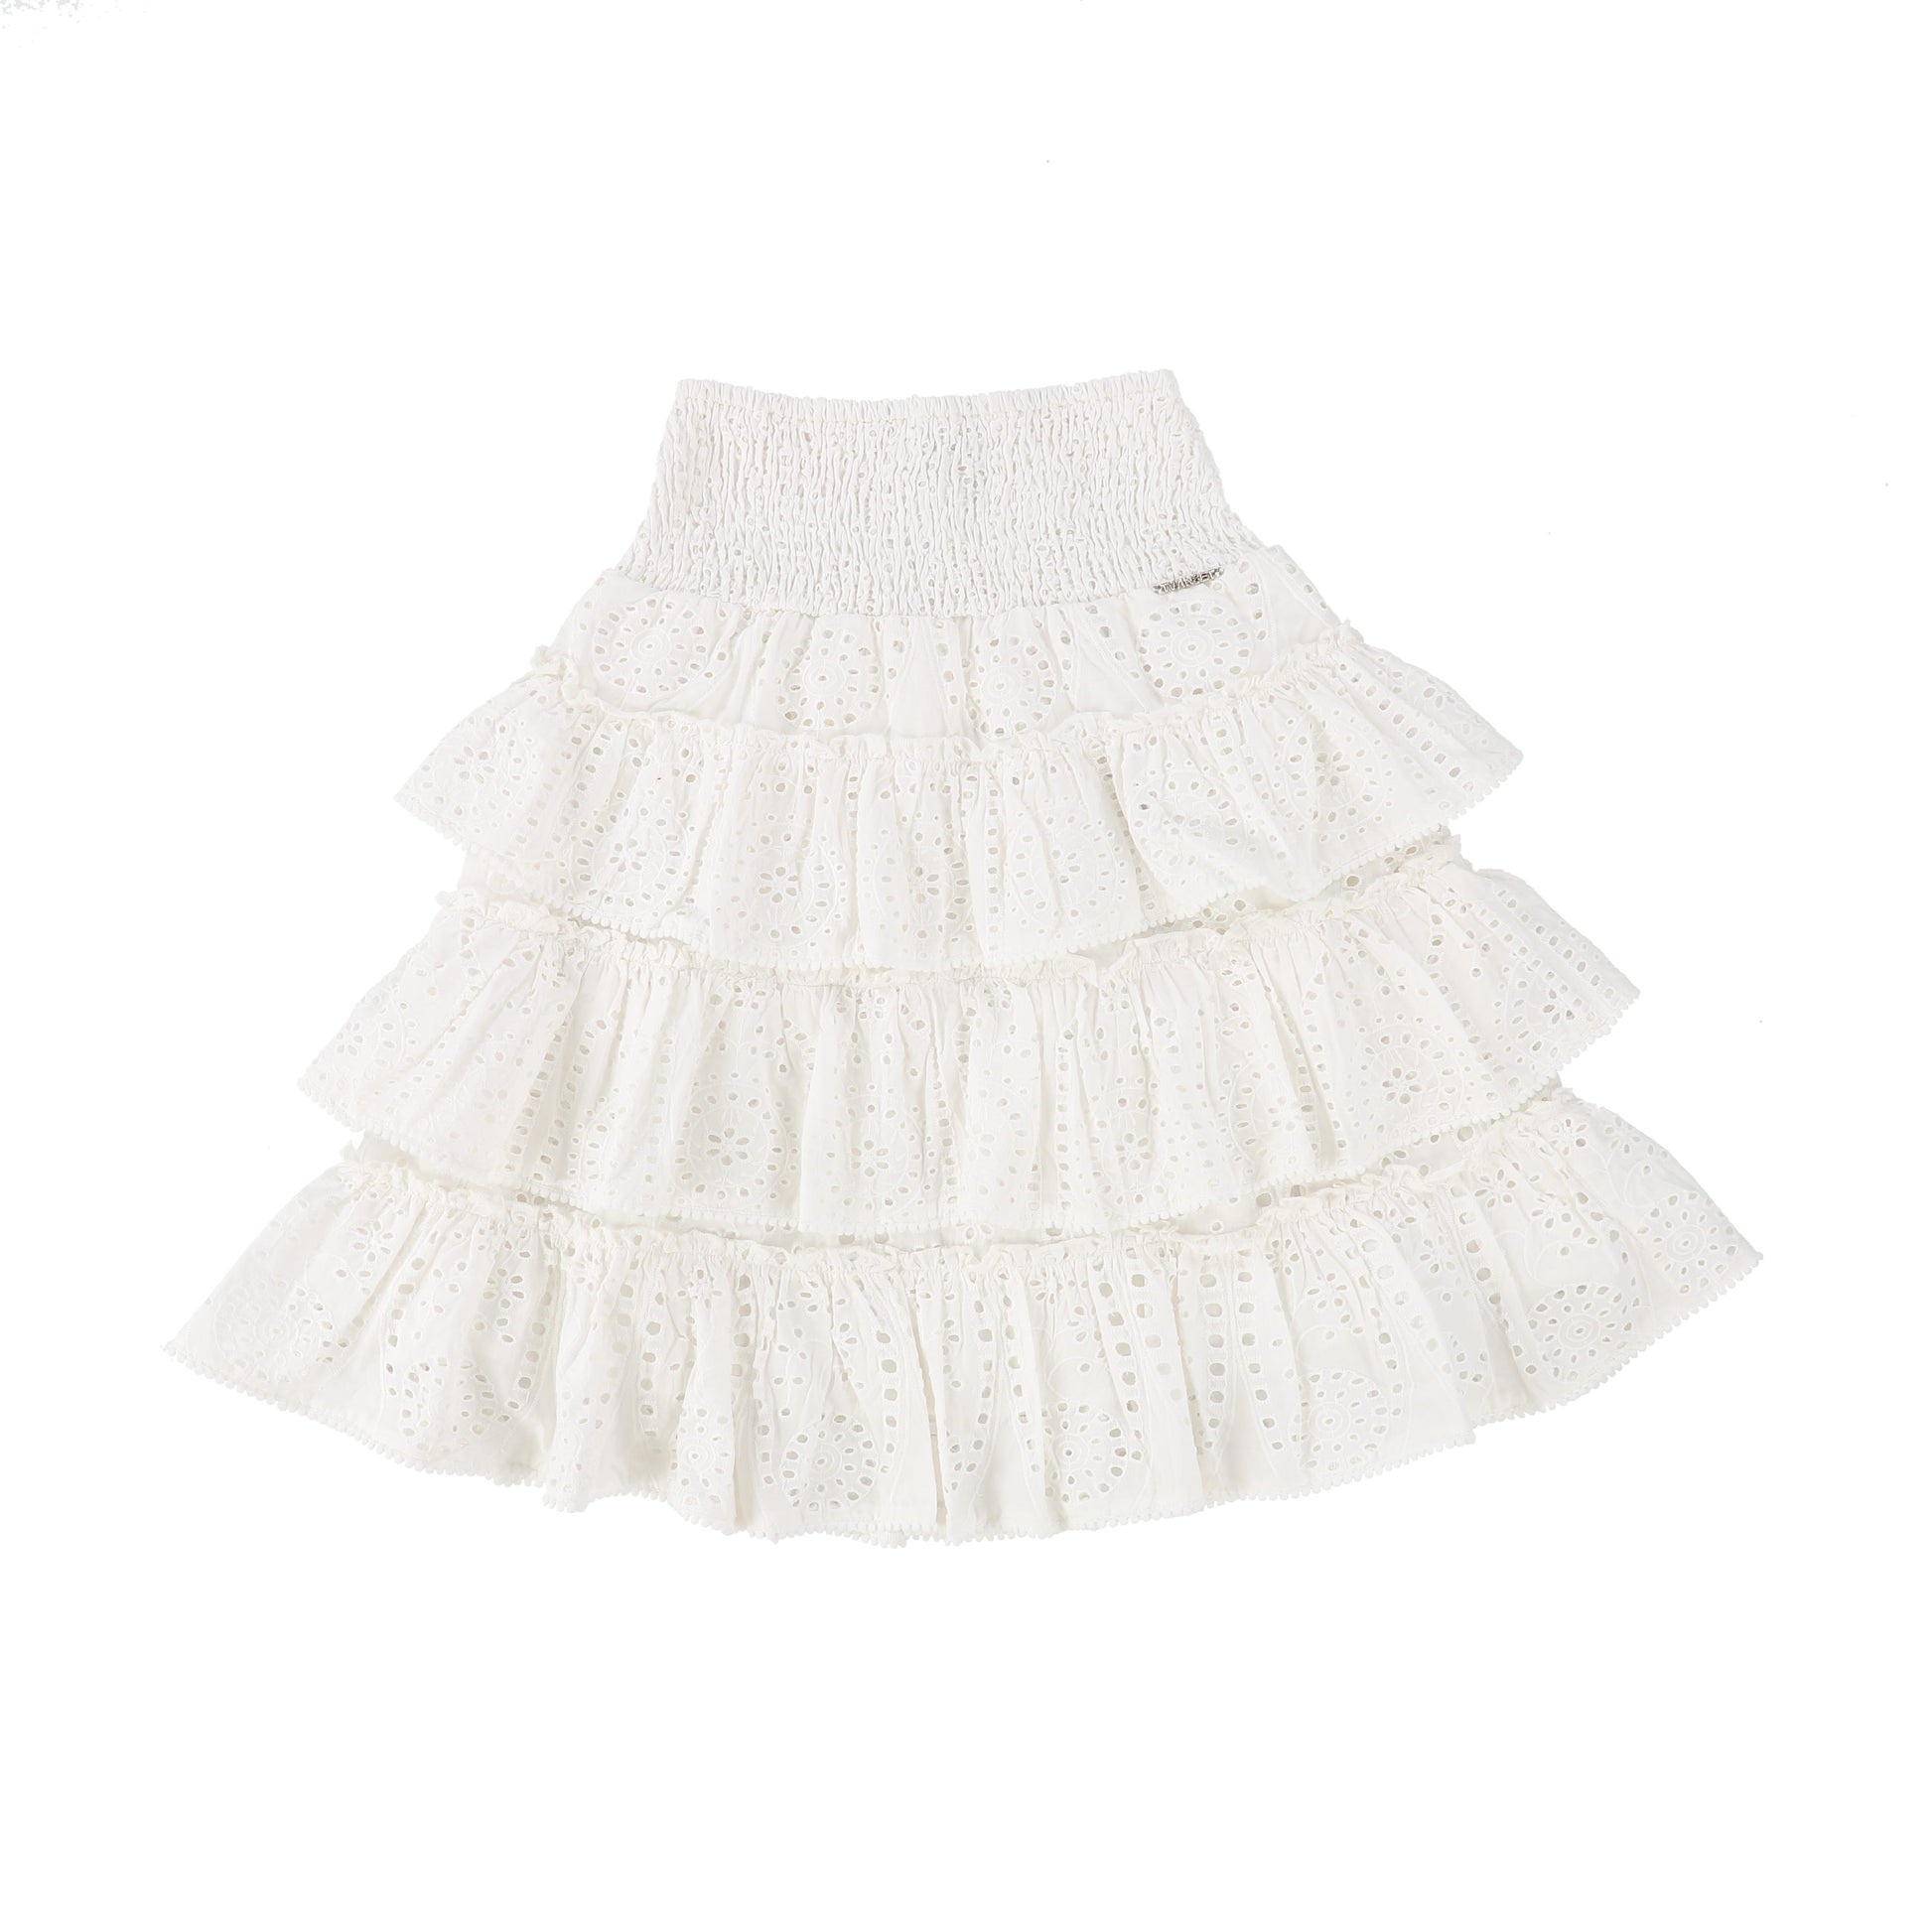 Long White Skirt - Buy Long White Skirt online at Best Prices in